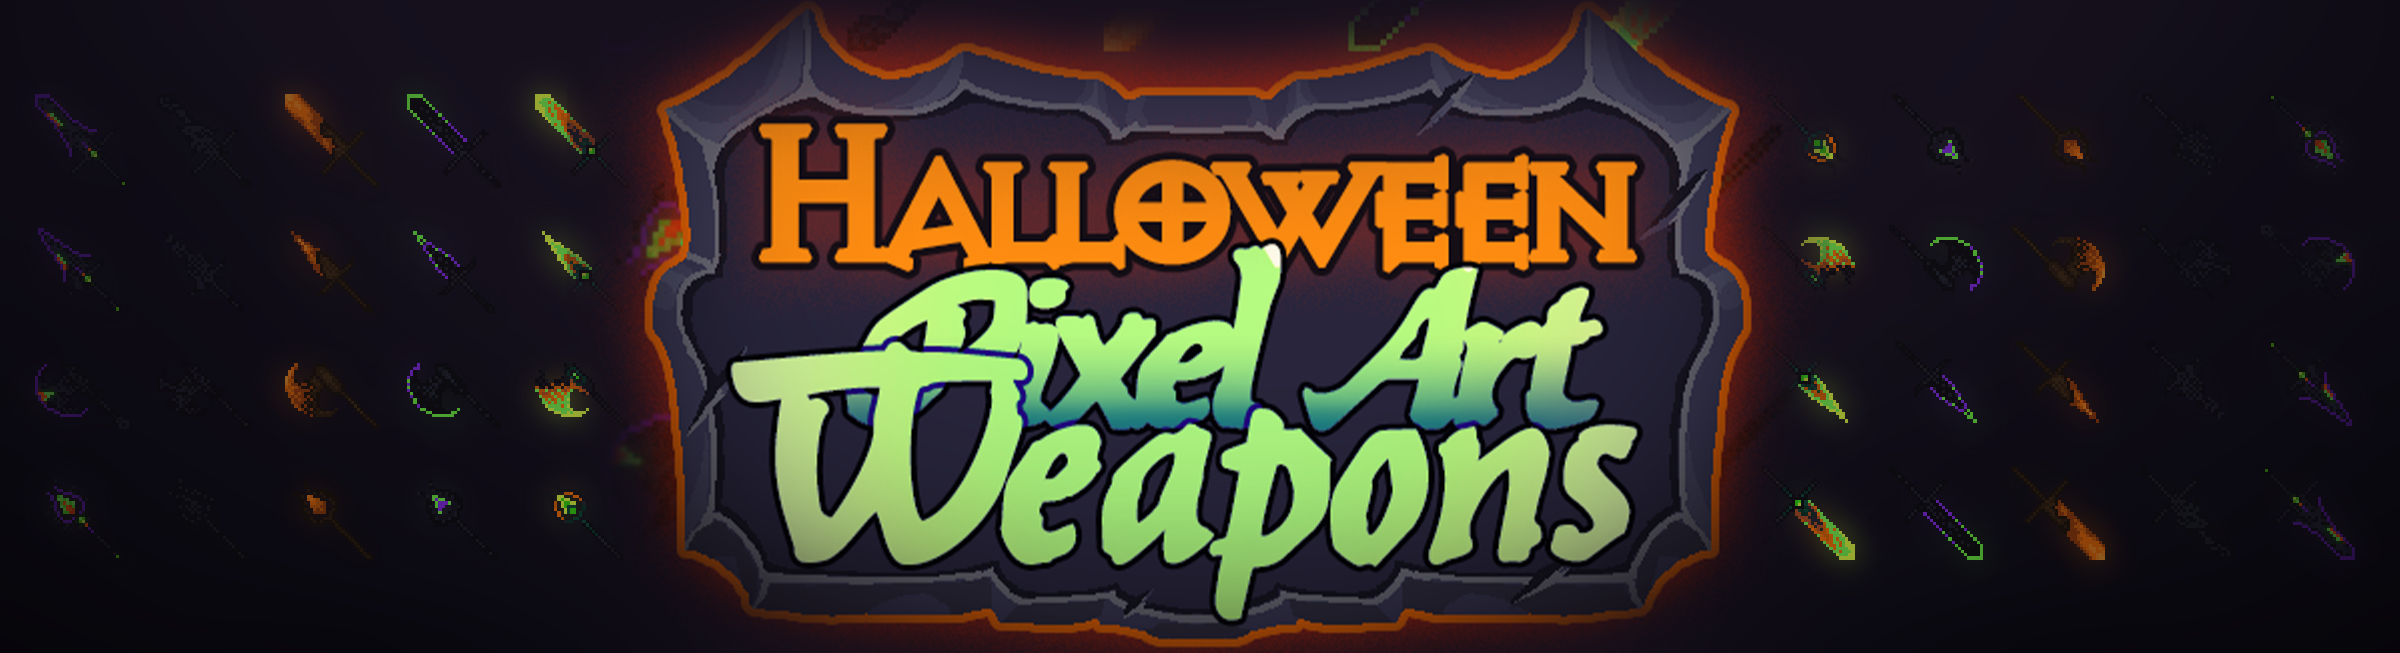 Halloween Pixel Art Weapons